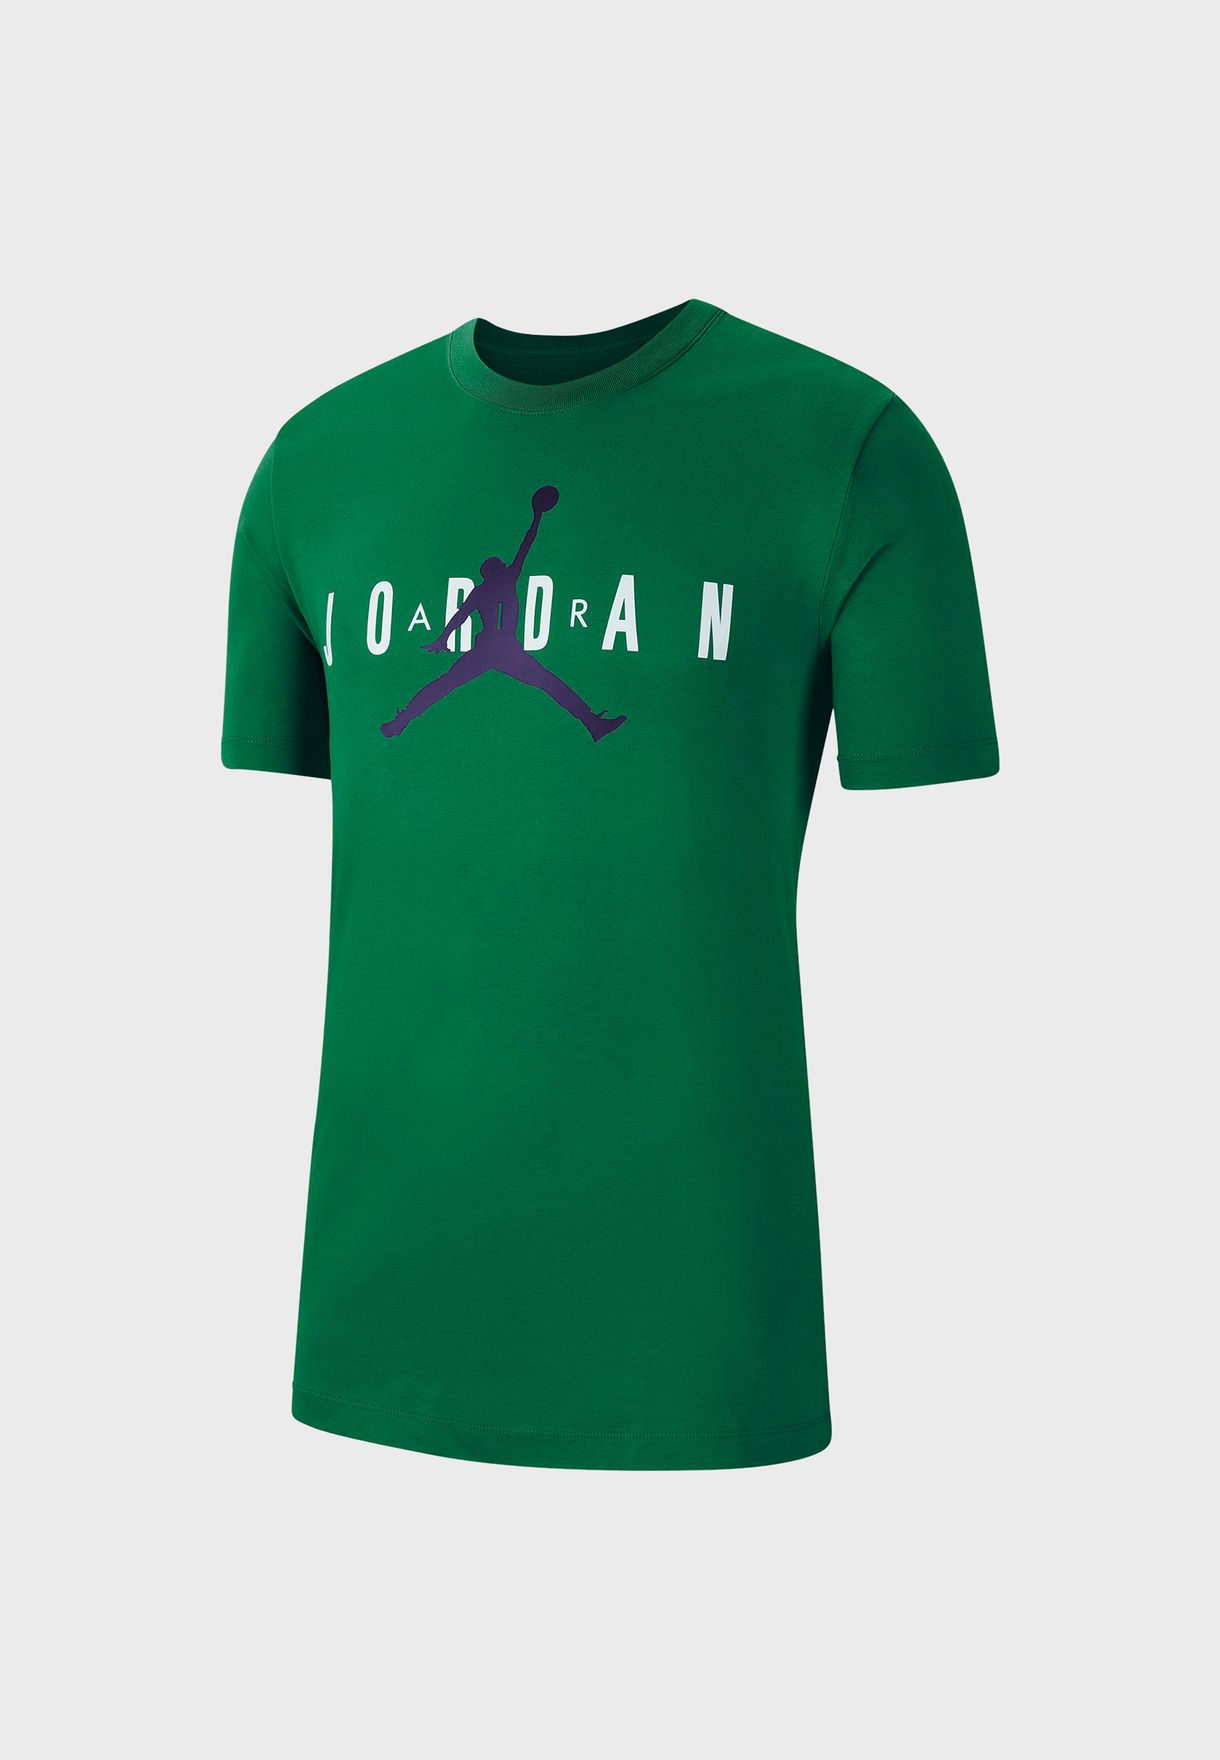 jordan t shirt green online -